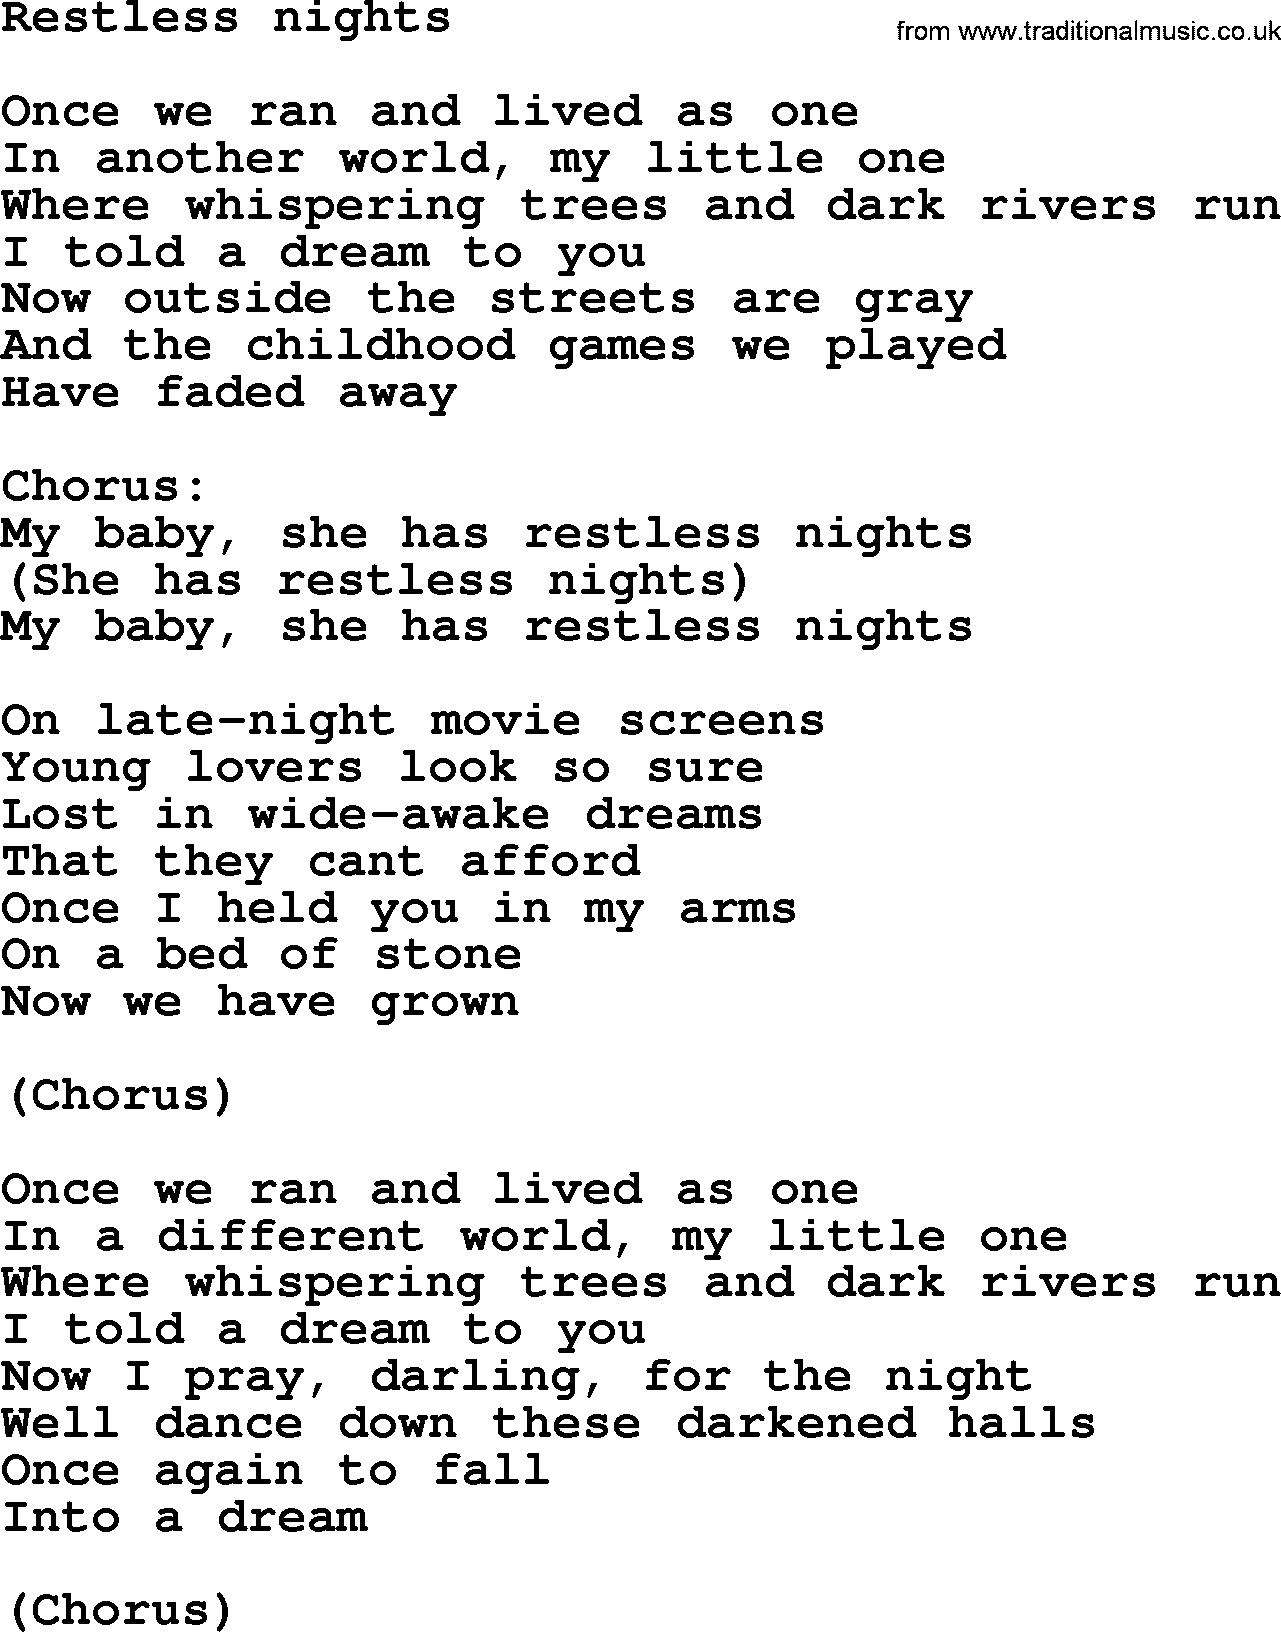 Bruce Springsteen song: Restless Nights lyrics